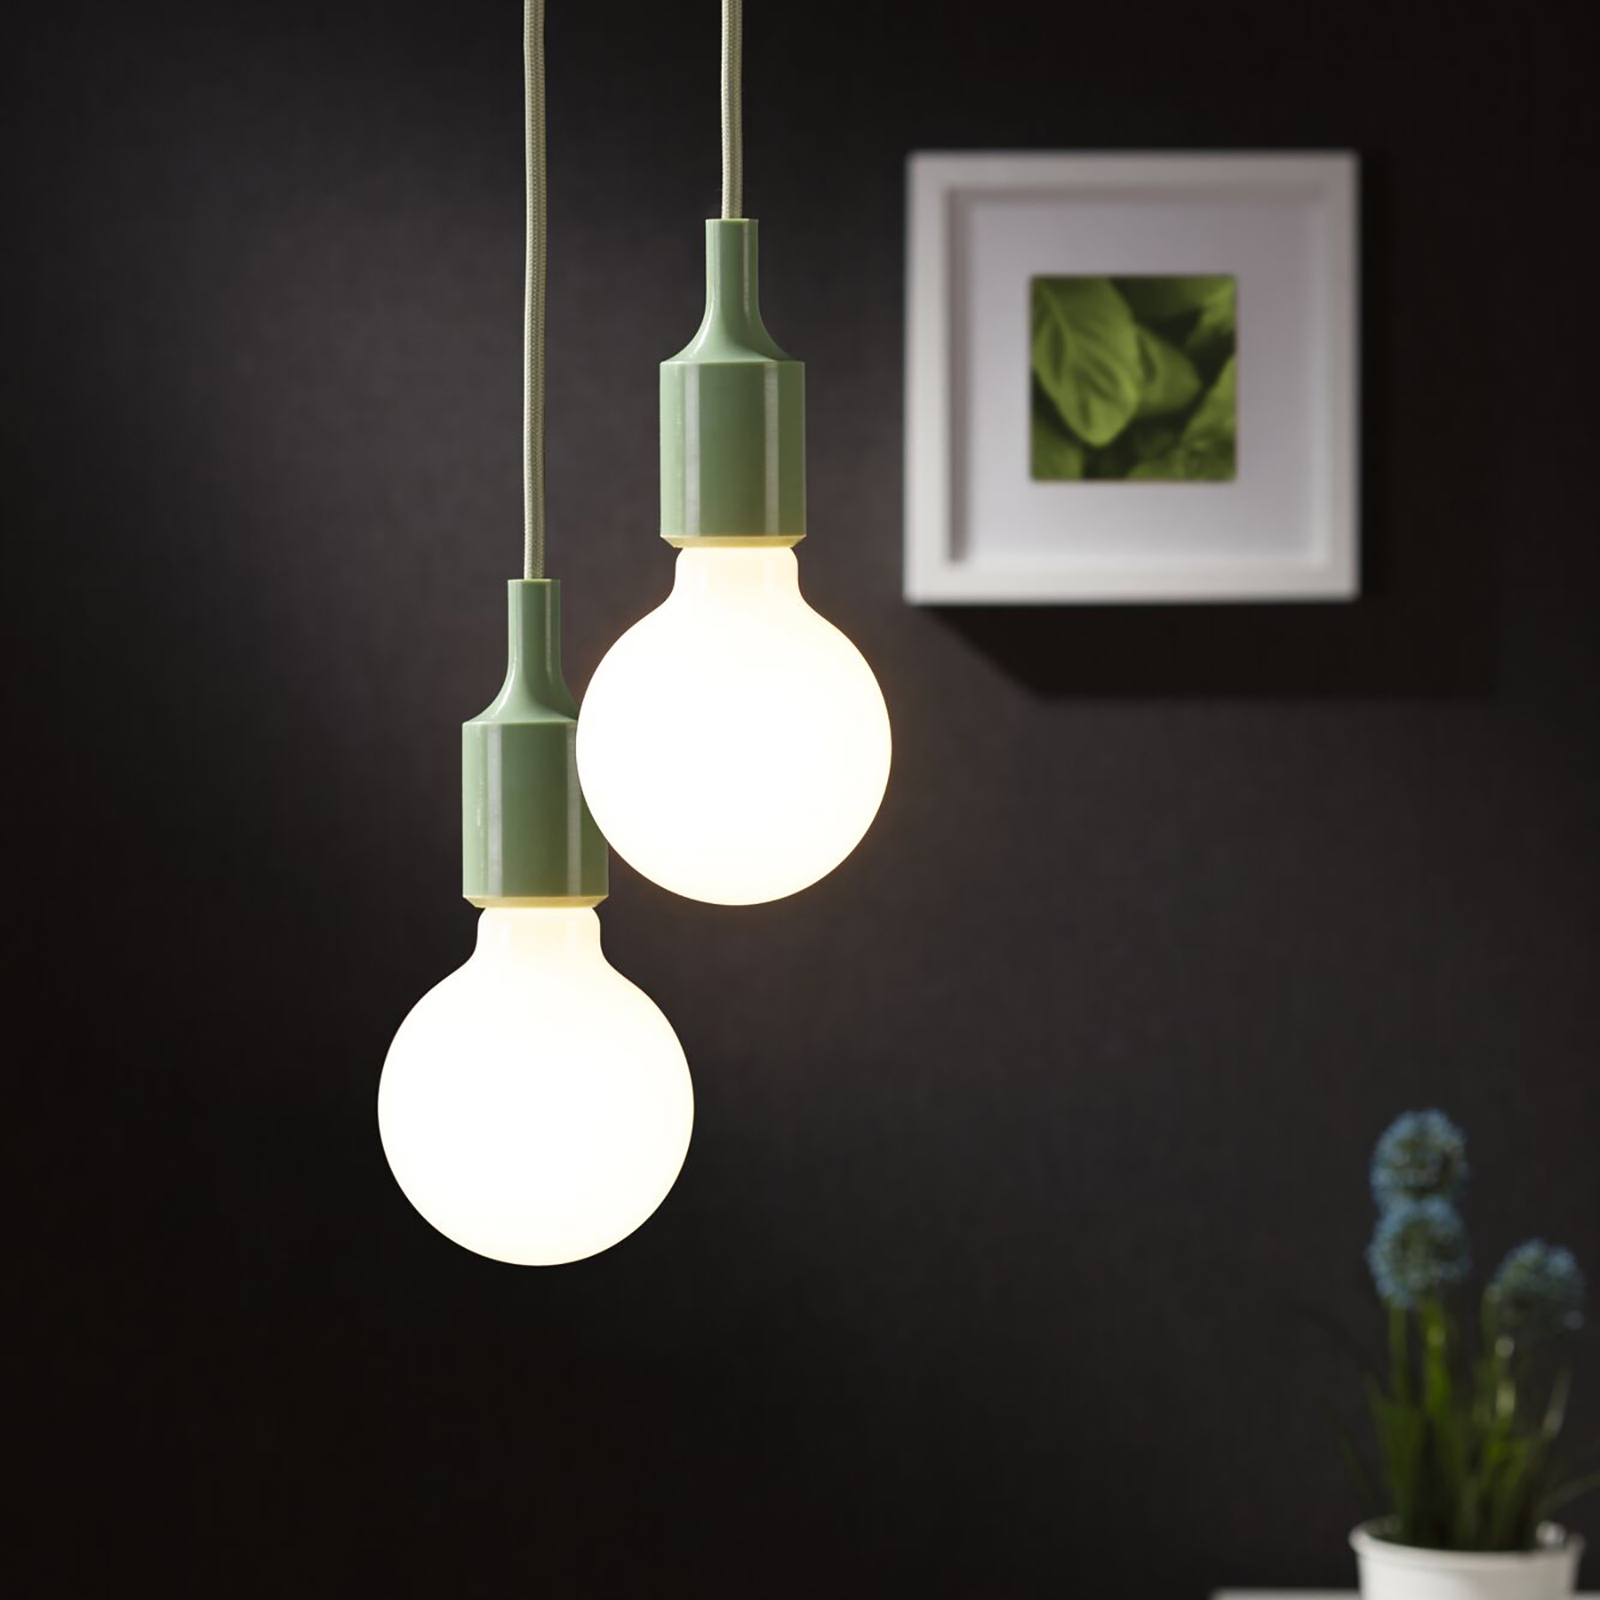 Paulmann Neordic Ketil hængelampe, lysegrøn/sort